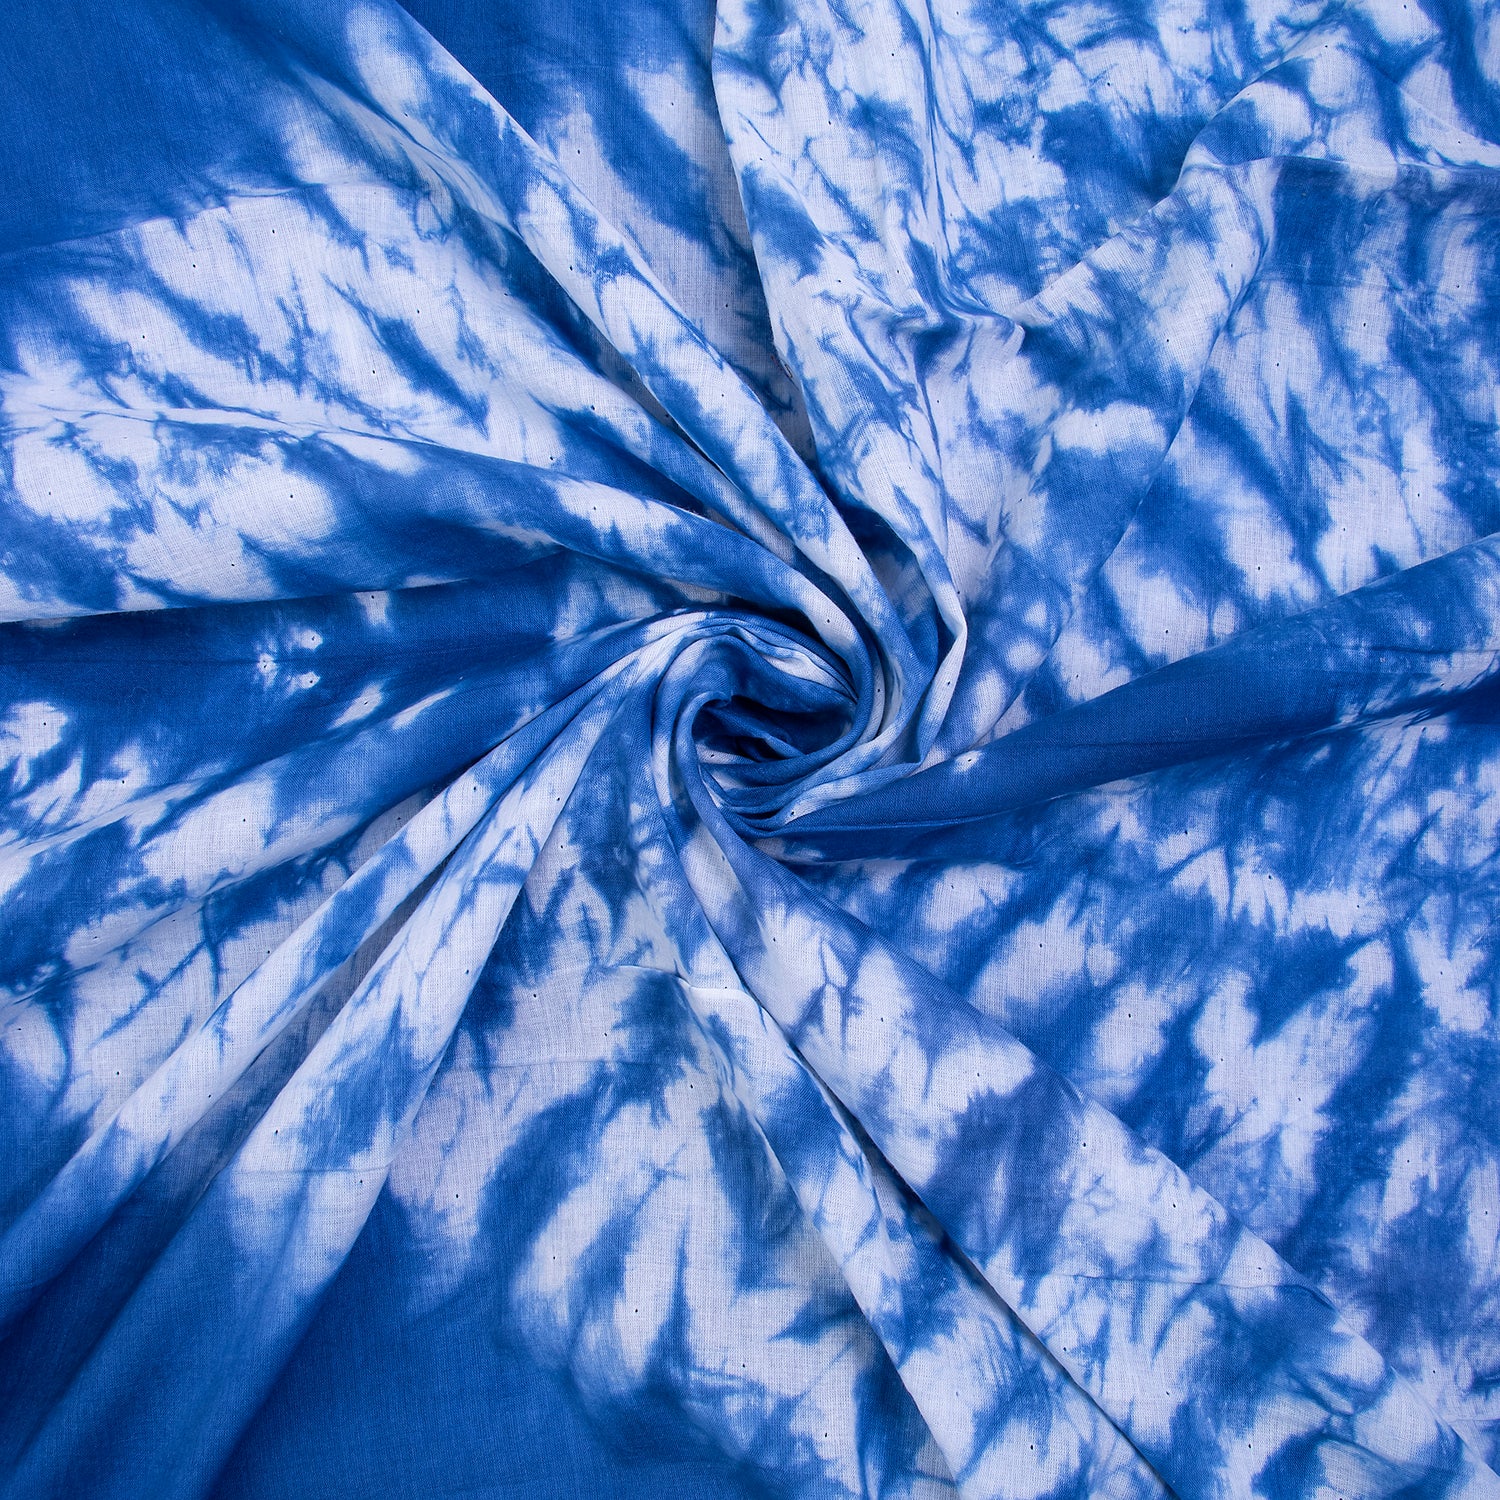 Blue Misty Waters Tie Dye Cotton Fabric